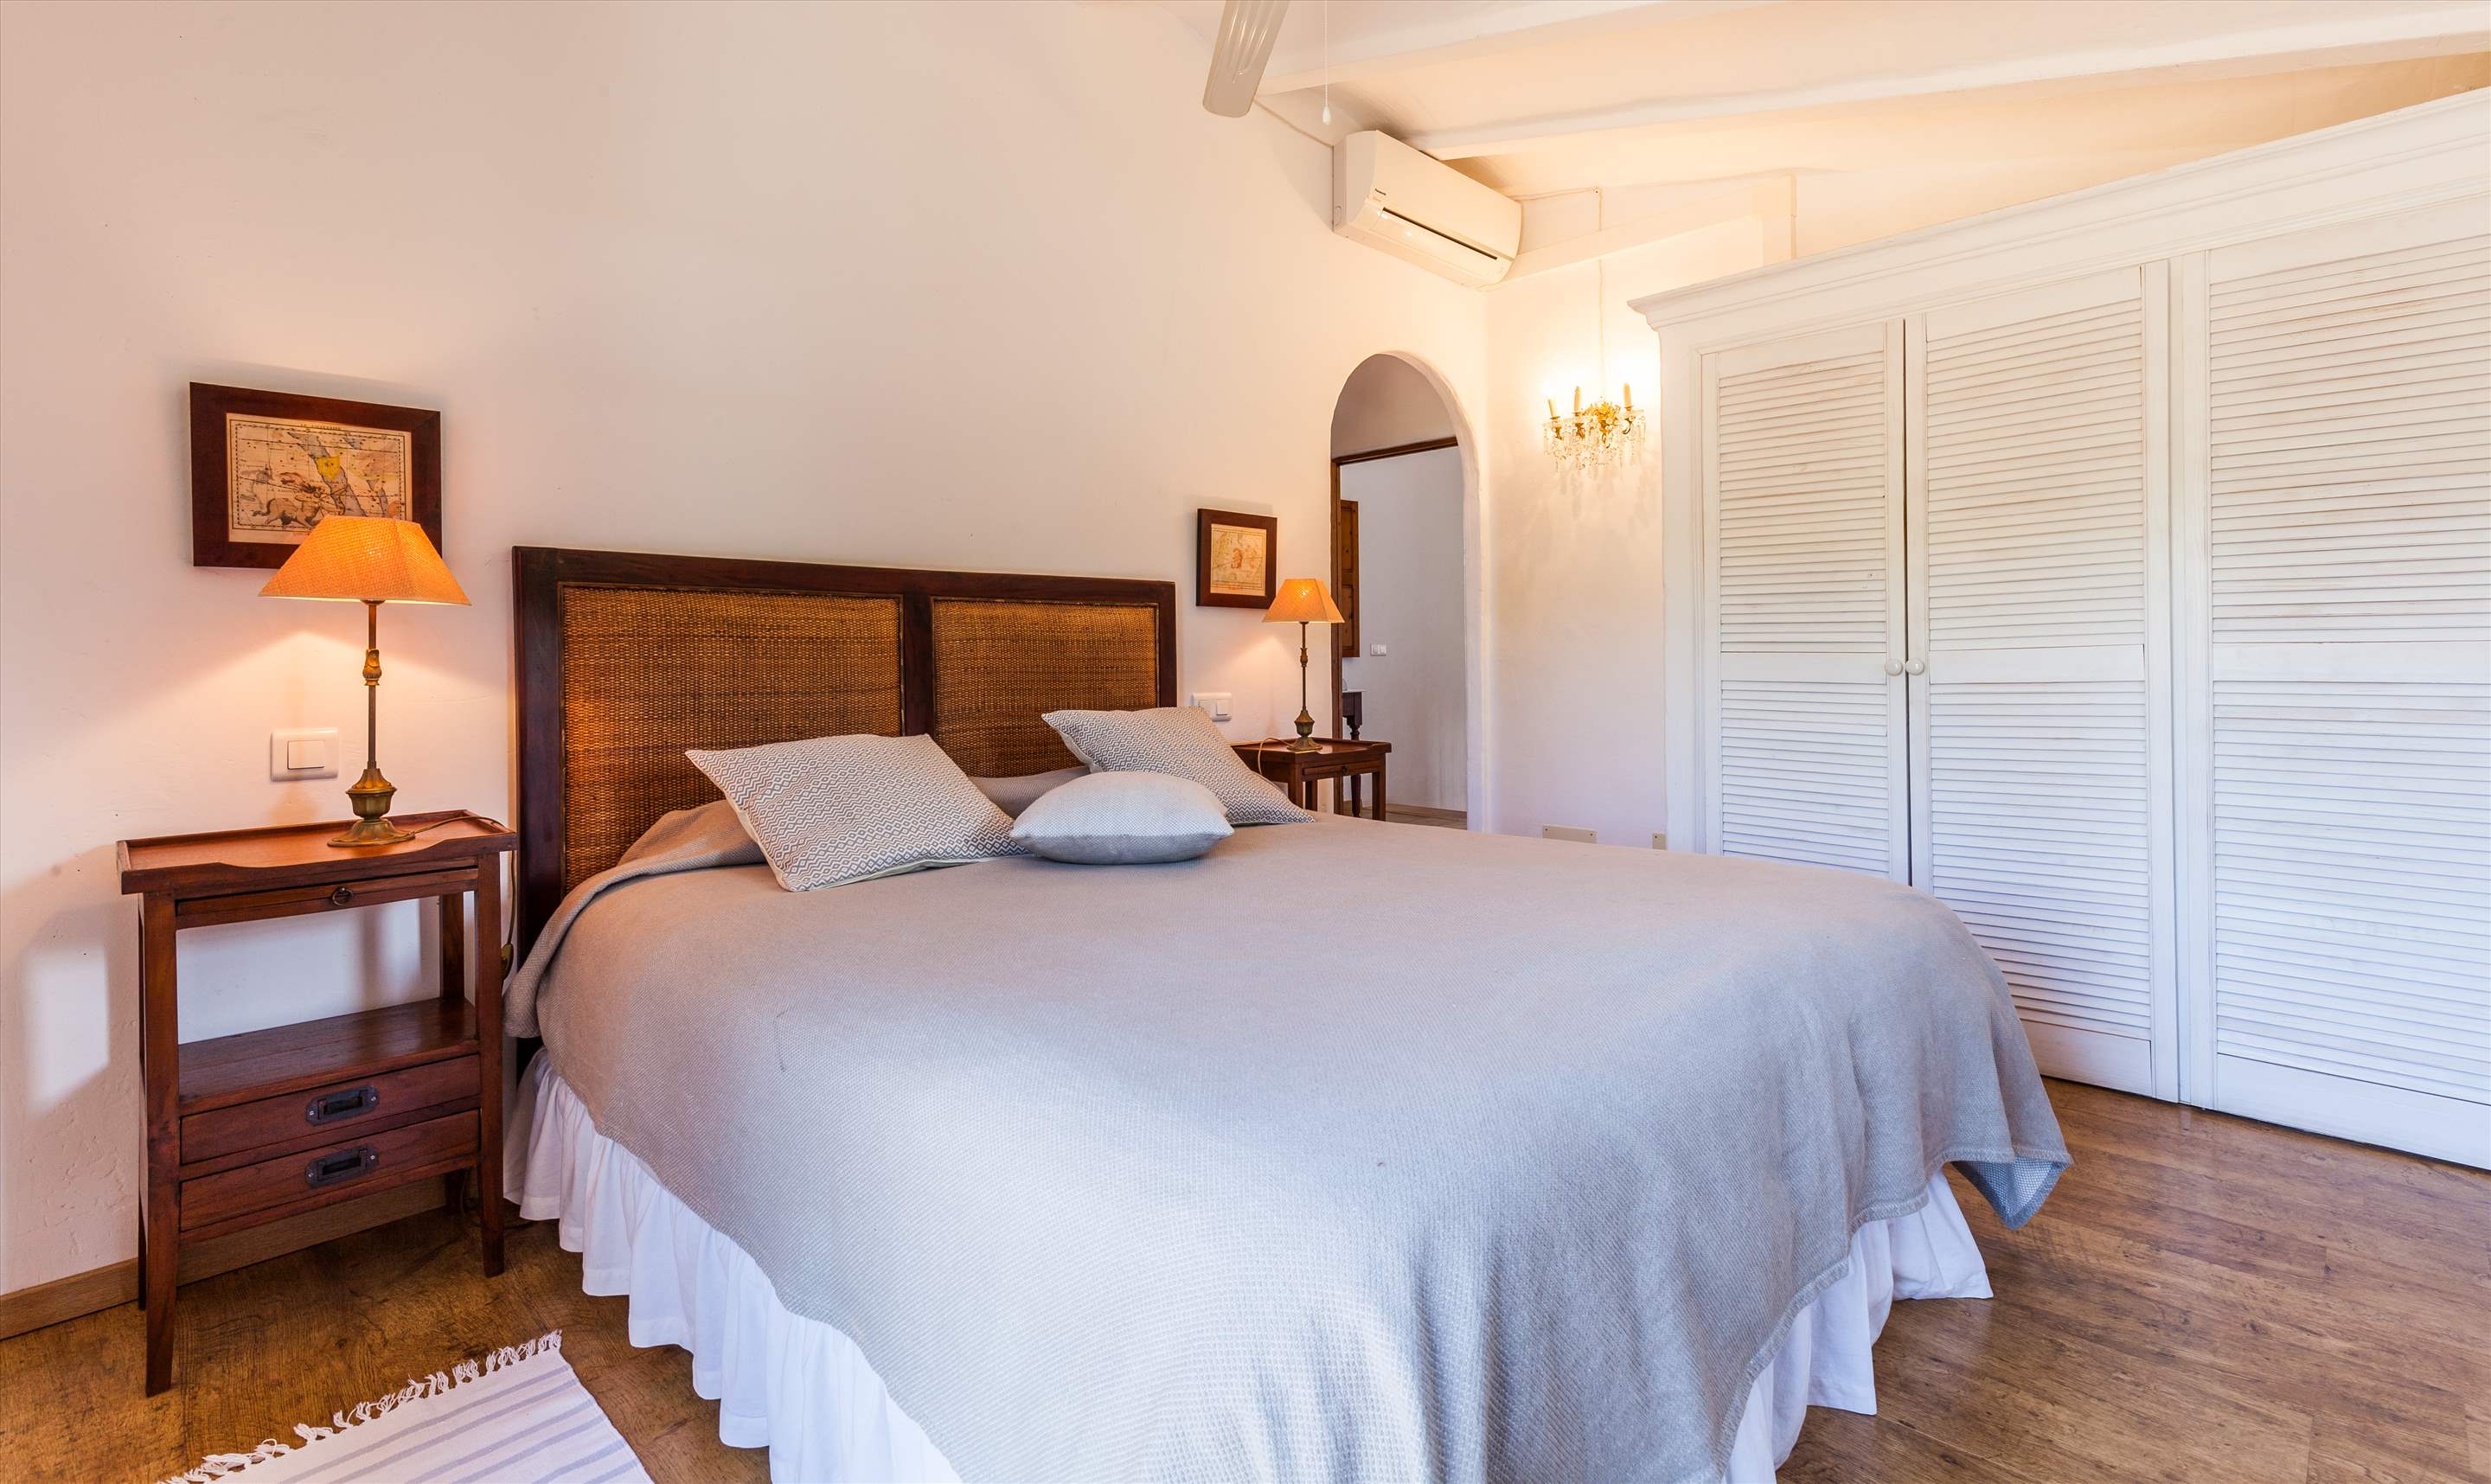 Villa Ca'n Teulada, 9-12 persons, 6 bedroom villa in Pollensa & Puerto Pollensa, Majorca Photo #15